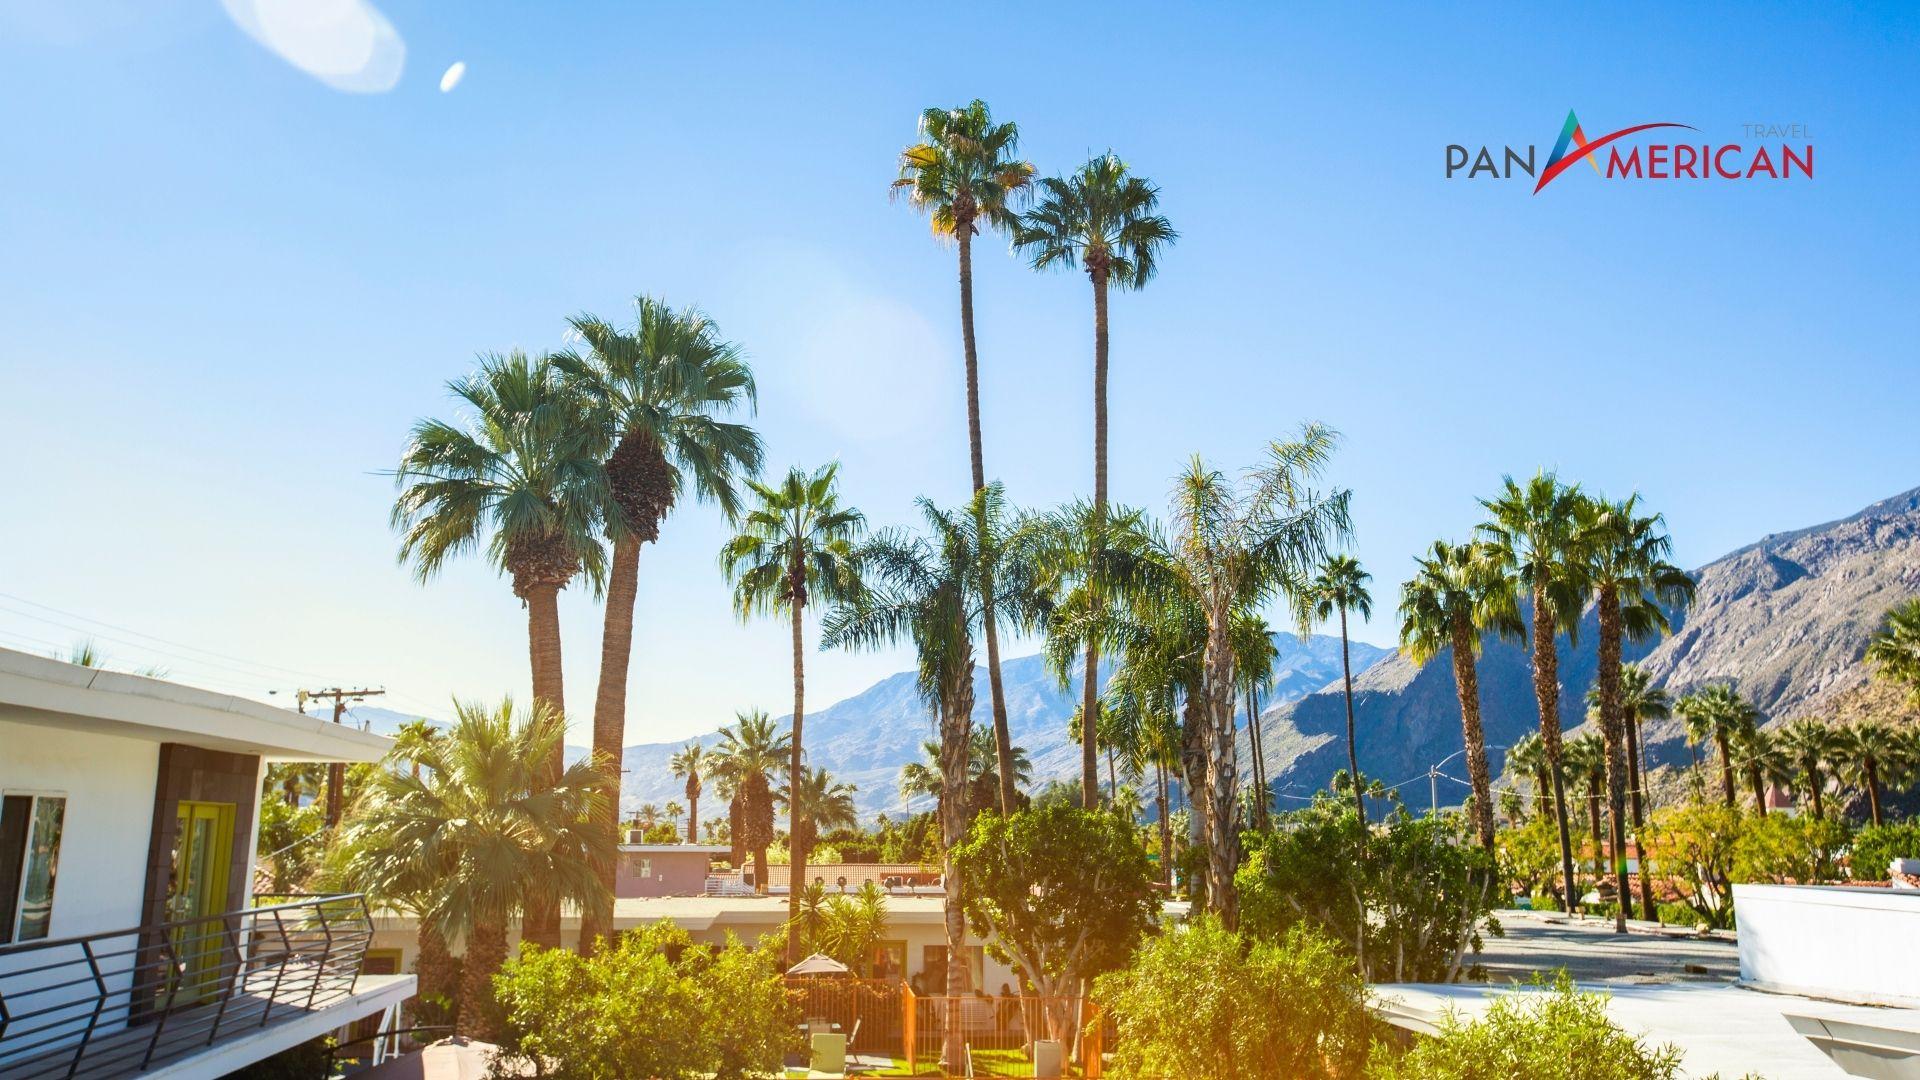 Nét đẹp của Palm Springs nằm ở thiên nhiên hài hòa, quyến rũ